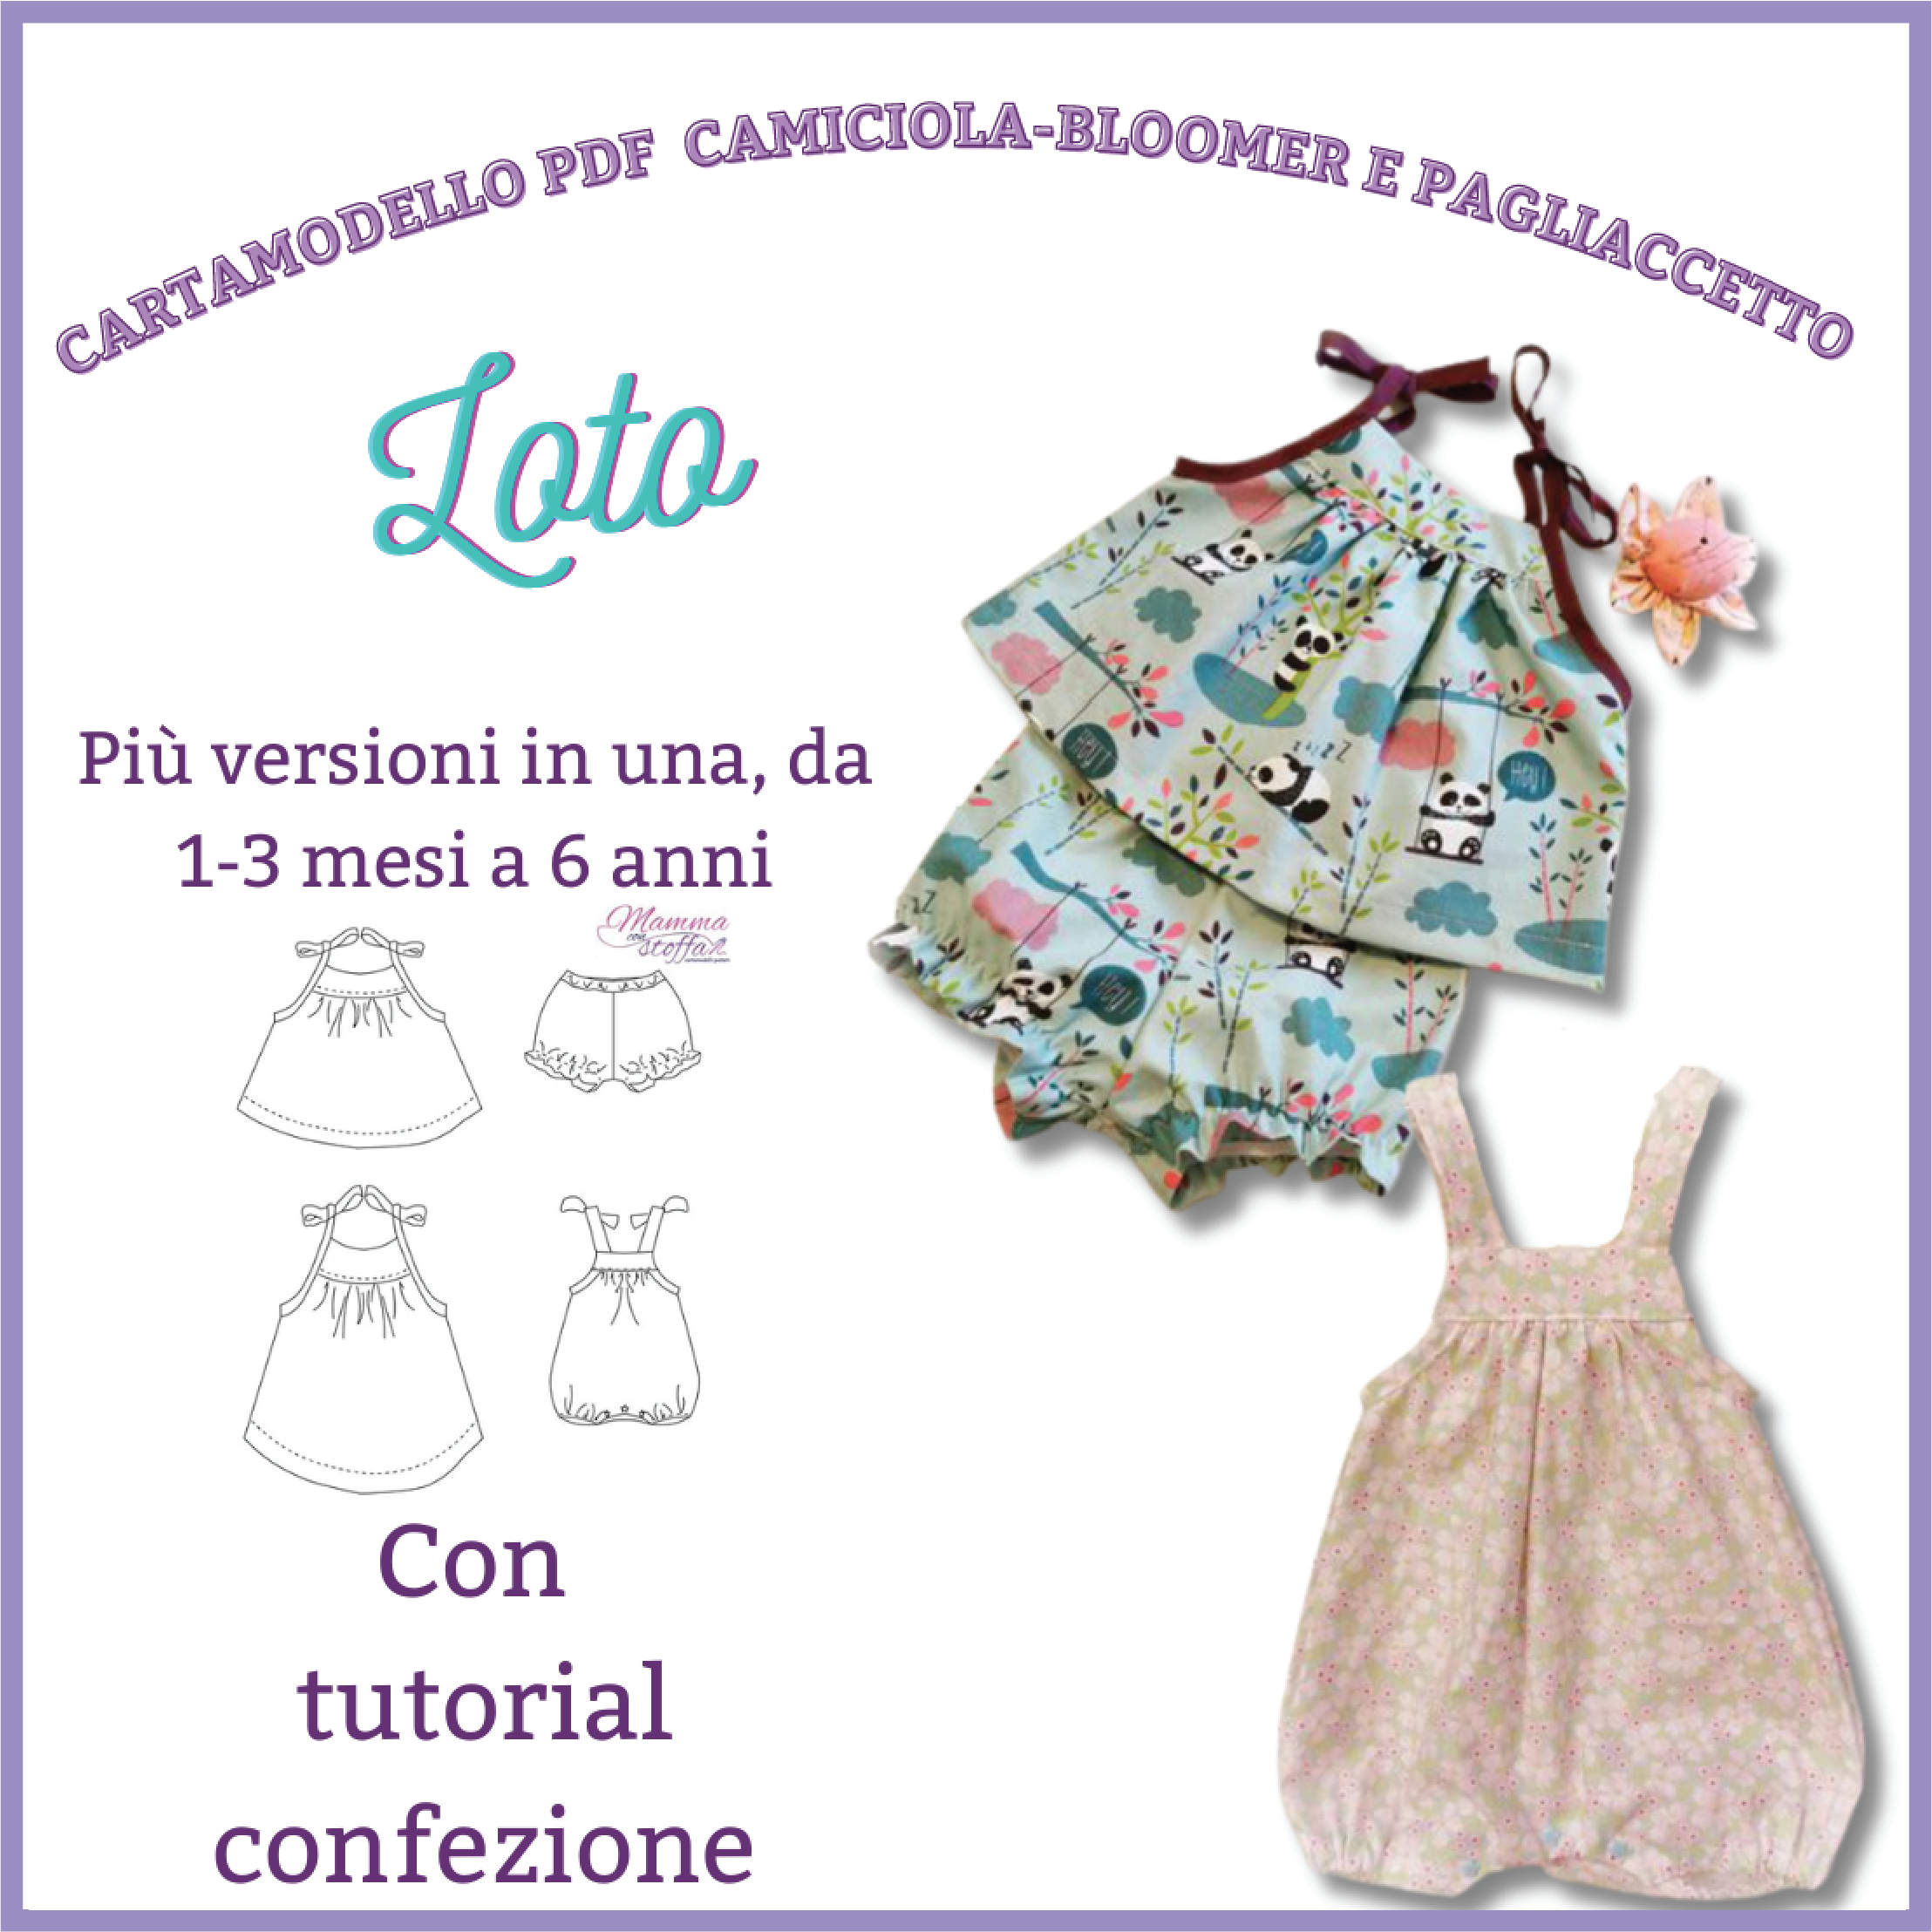 Canotta-bloomer-vestito e pagliaccetto Cartamodello e tutorial